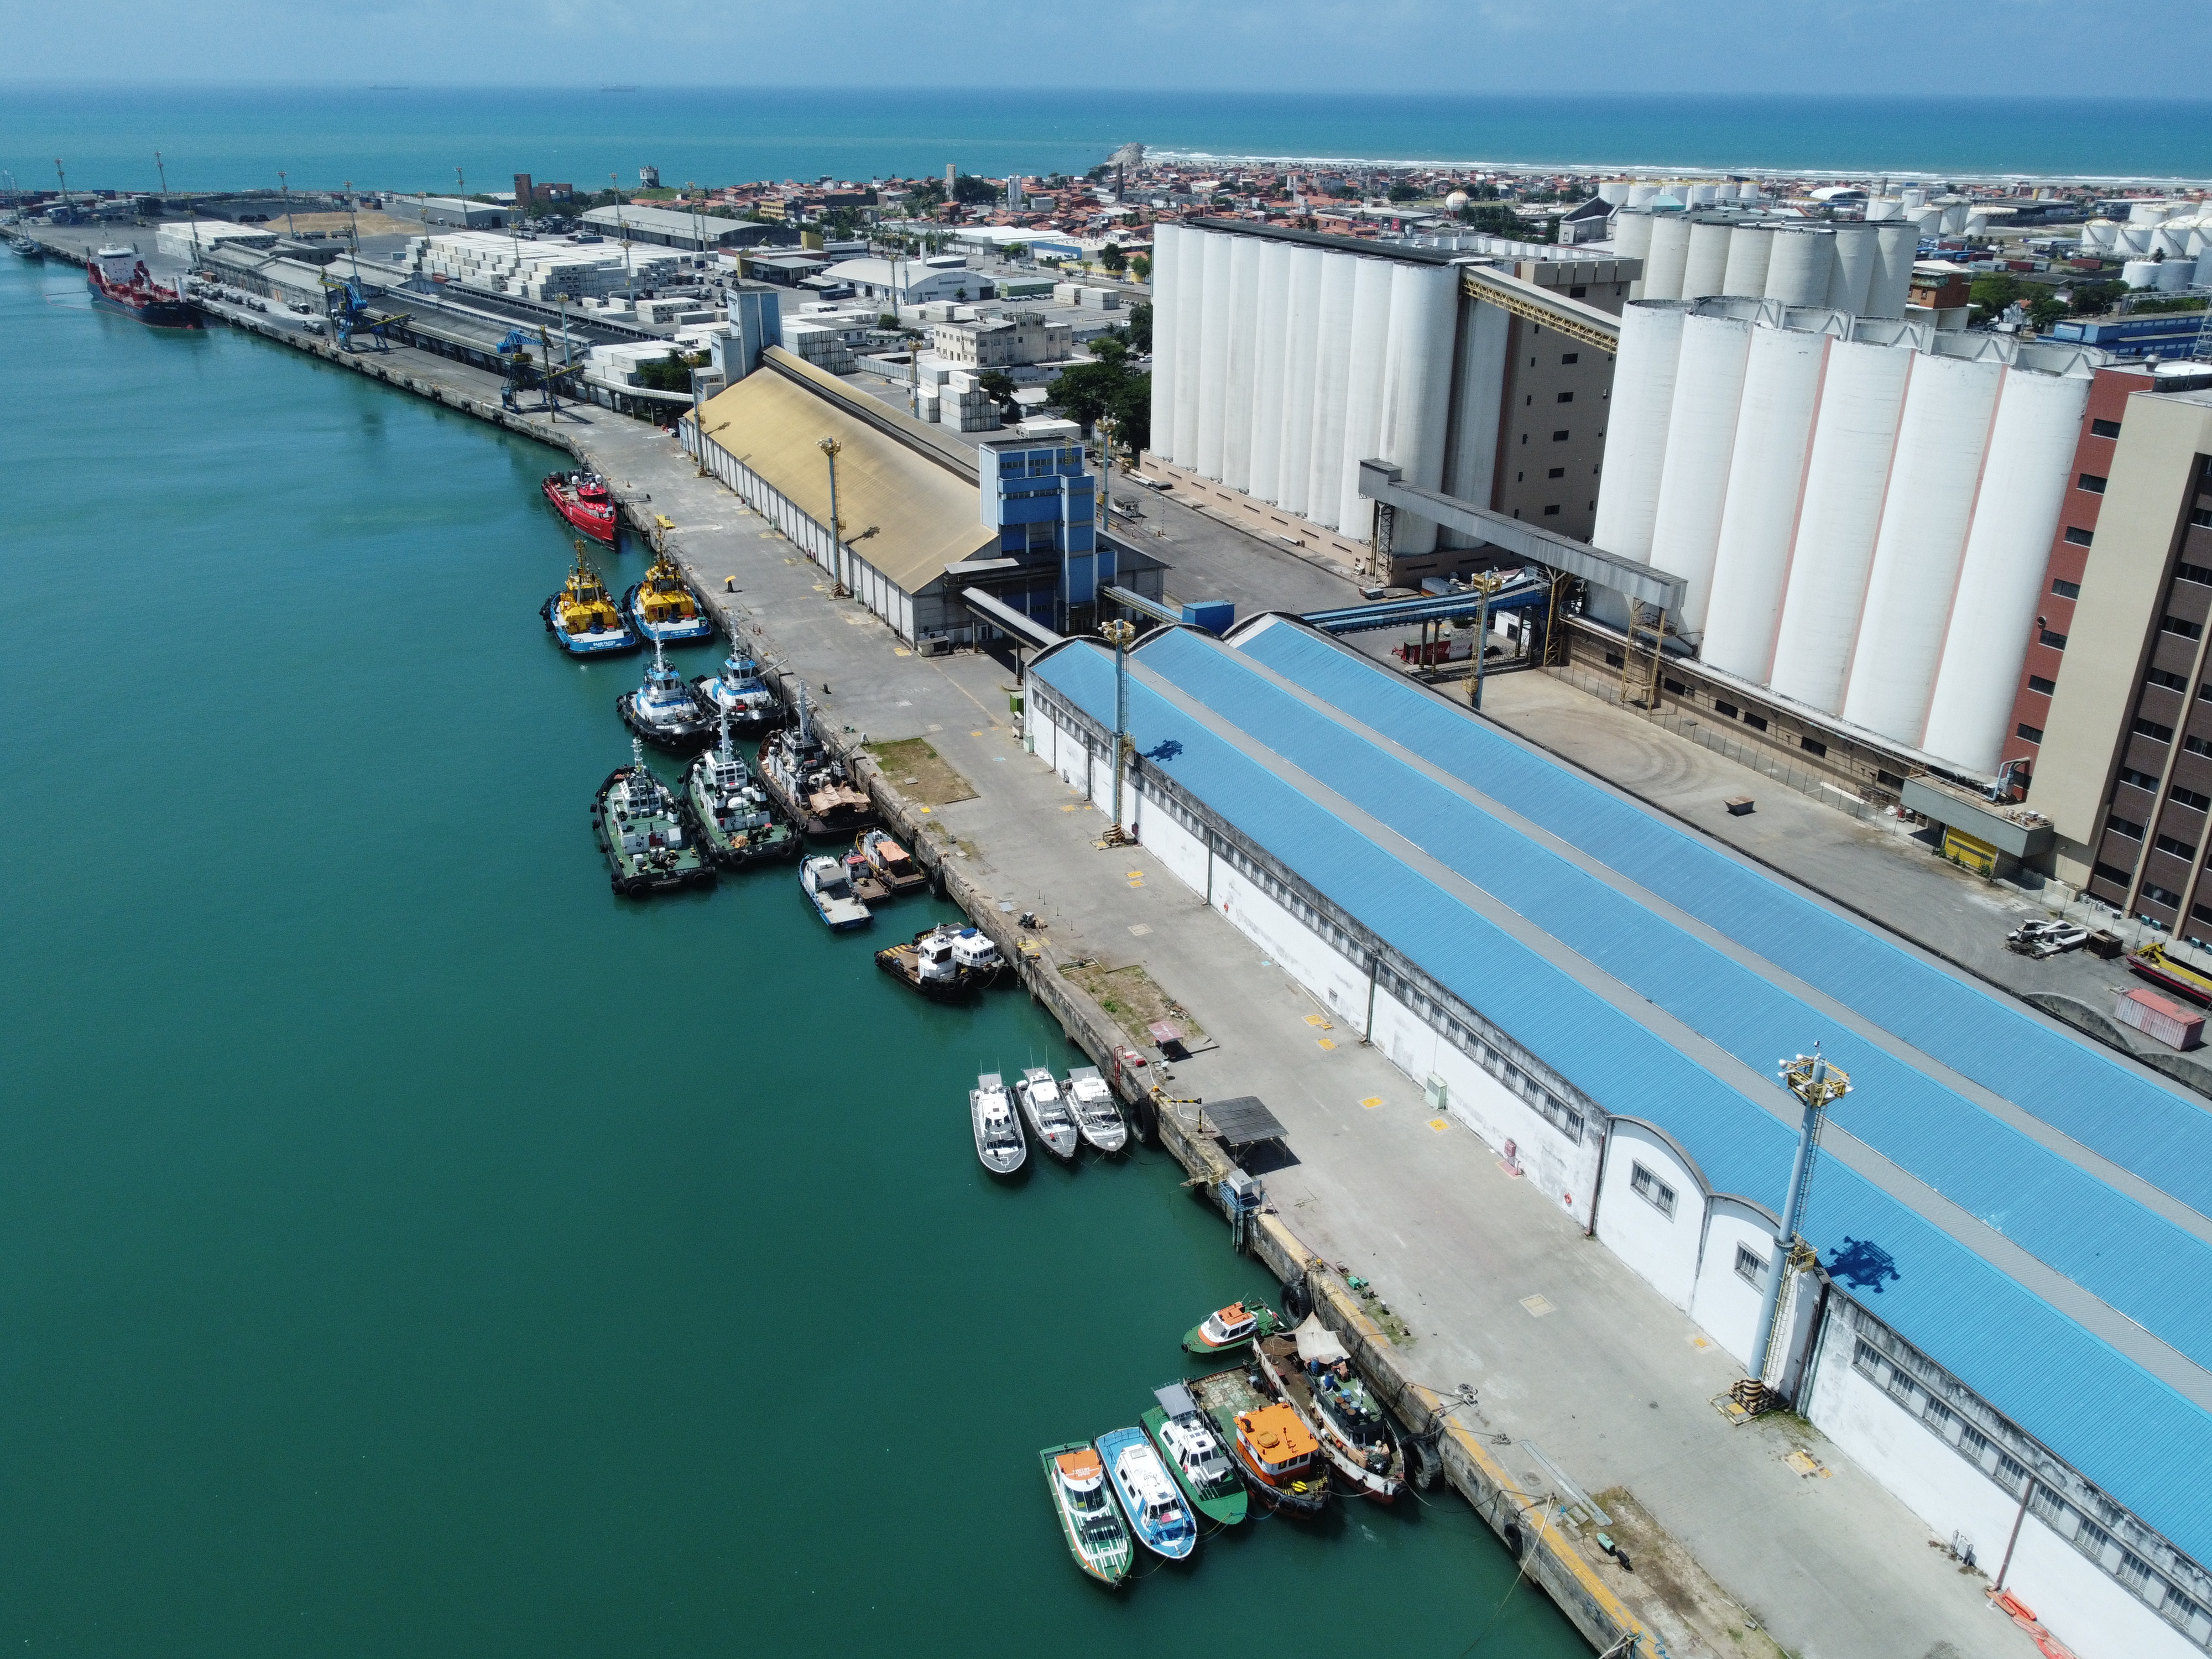 De acordo com Minfra, denúncias sobre o porto são apuradas internamente(Foto: FCO FONTENELE)